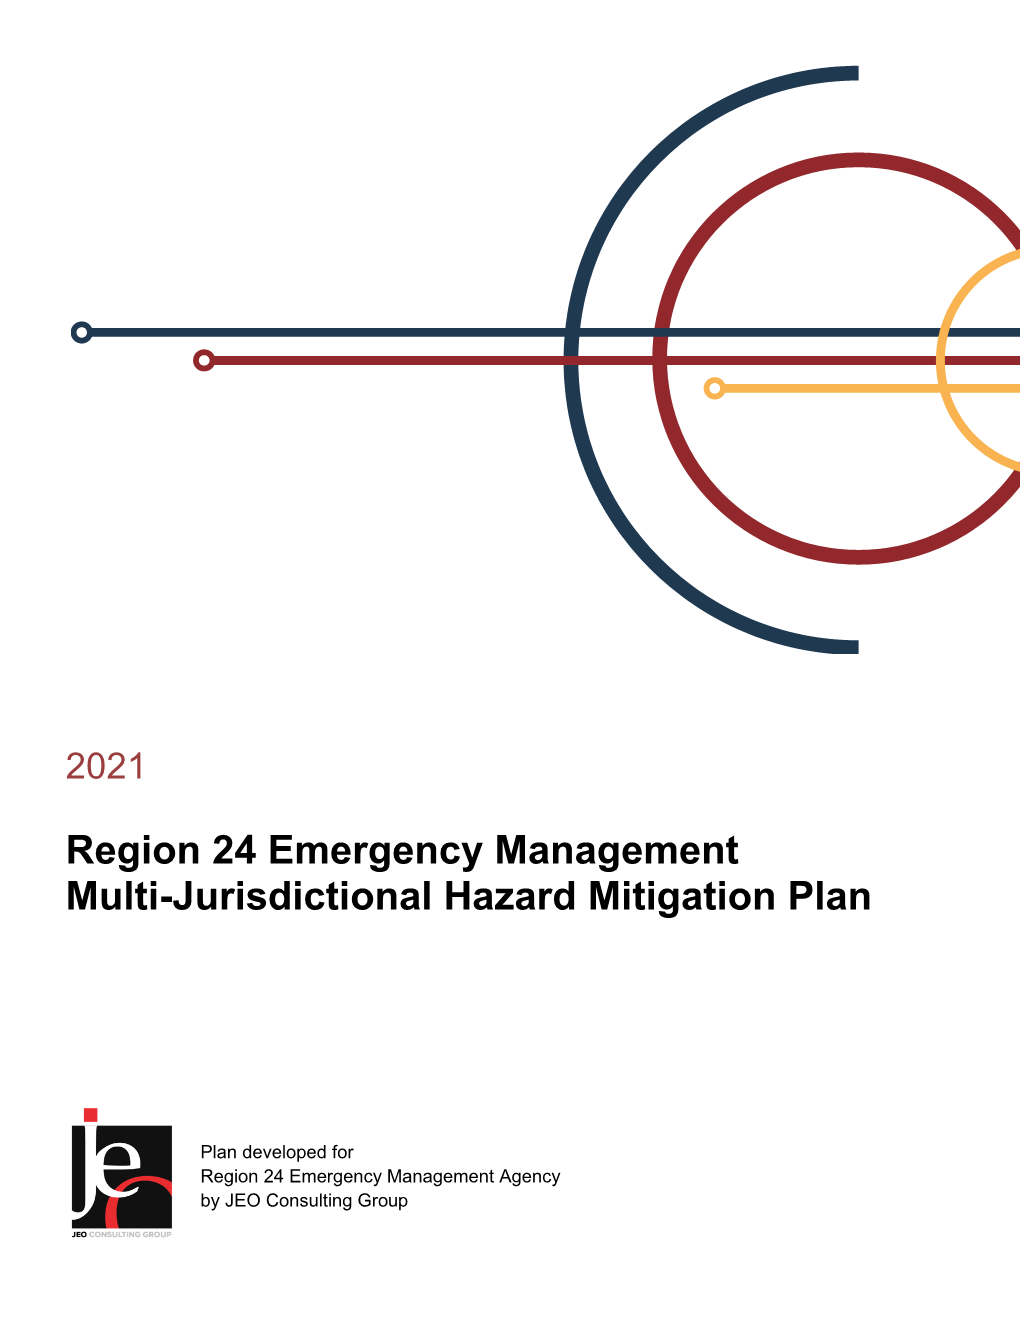 Region 24 Emergency Management Multi-Jurisdictional Hazard Mitigation Plan